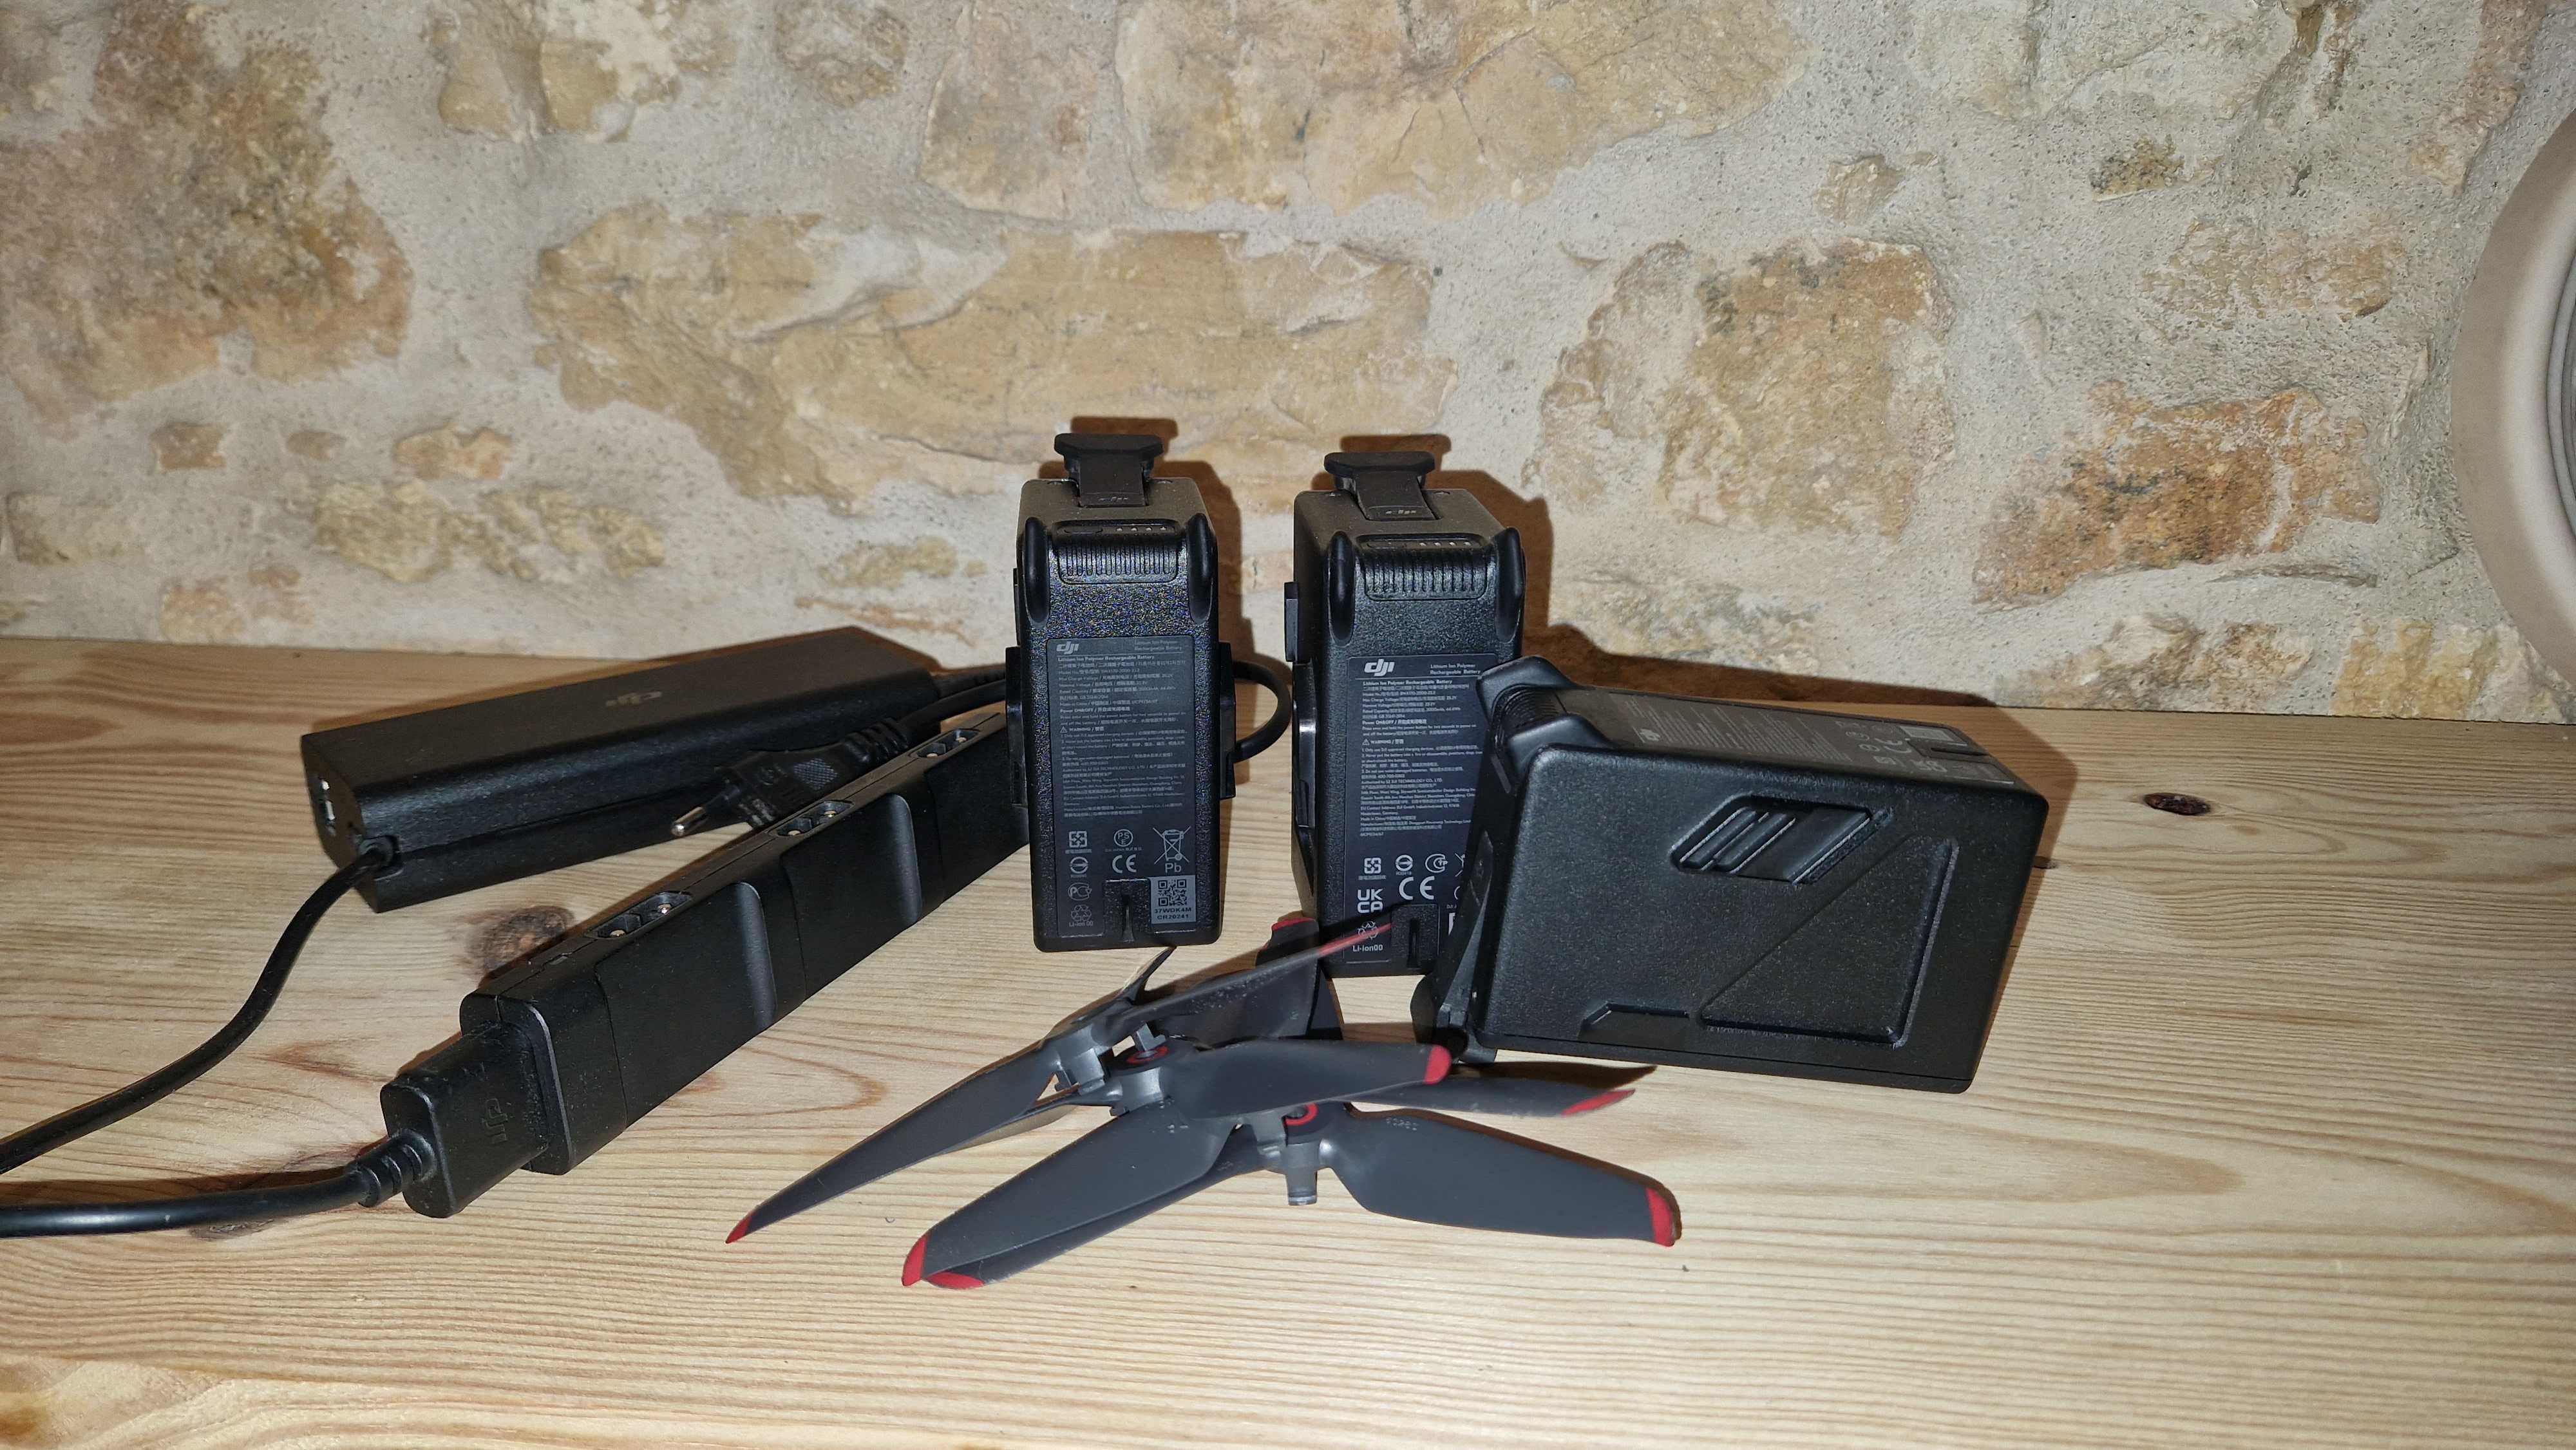 DJI FPV com Fly more kit (3 baterias + carregador)